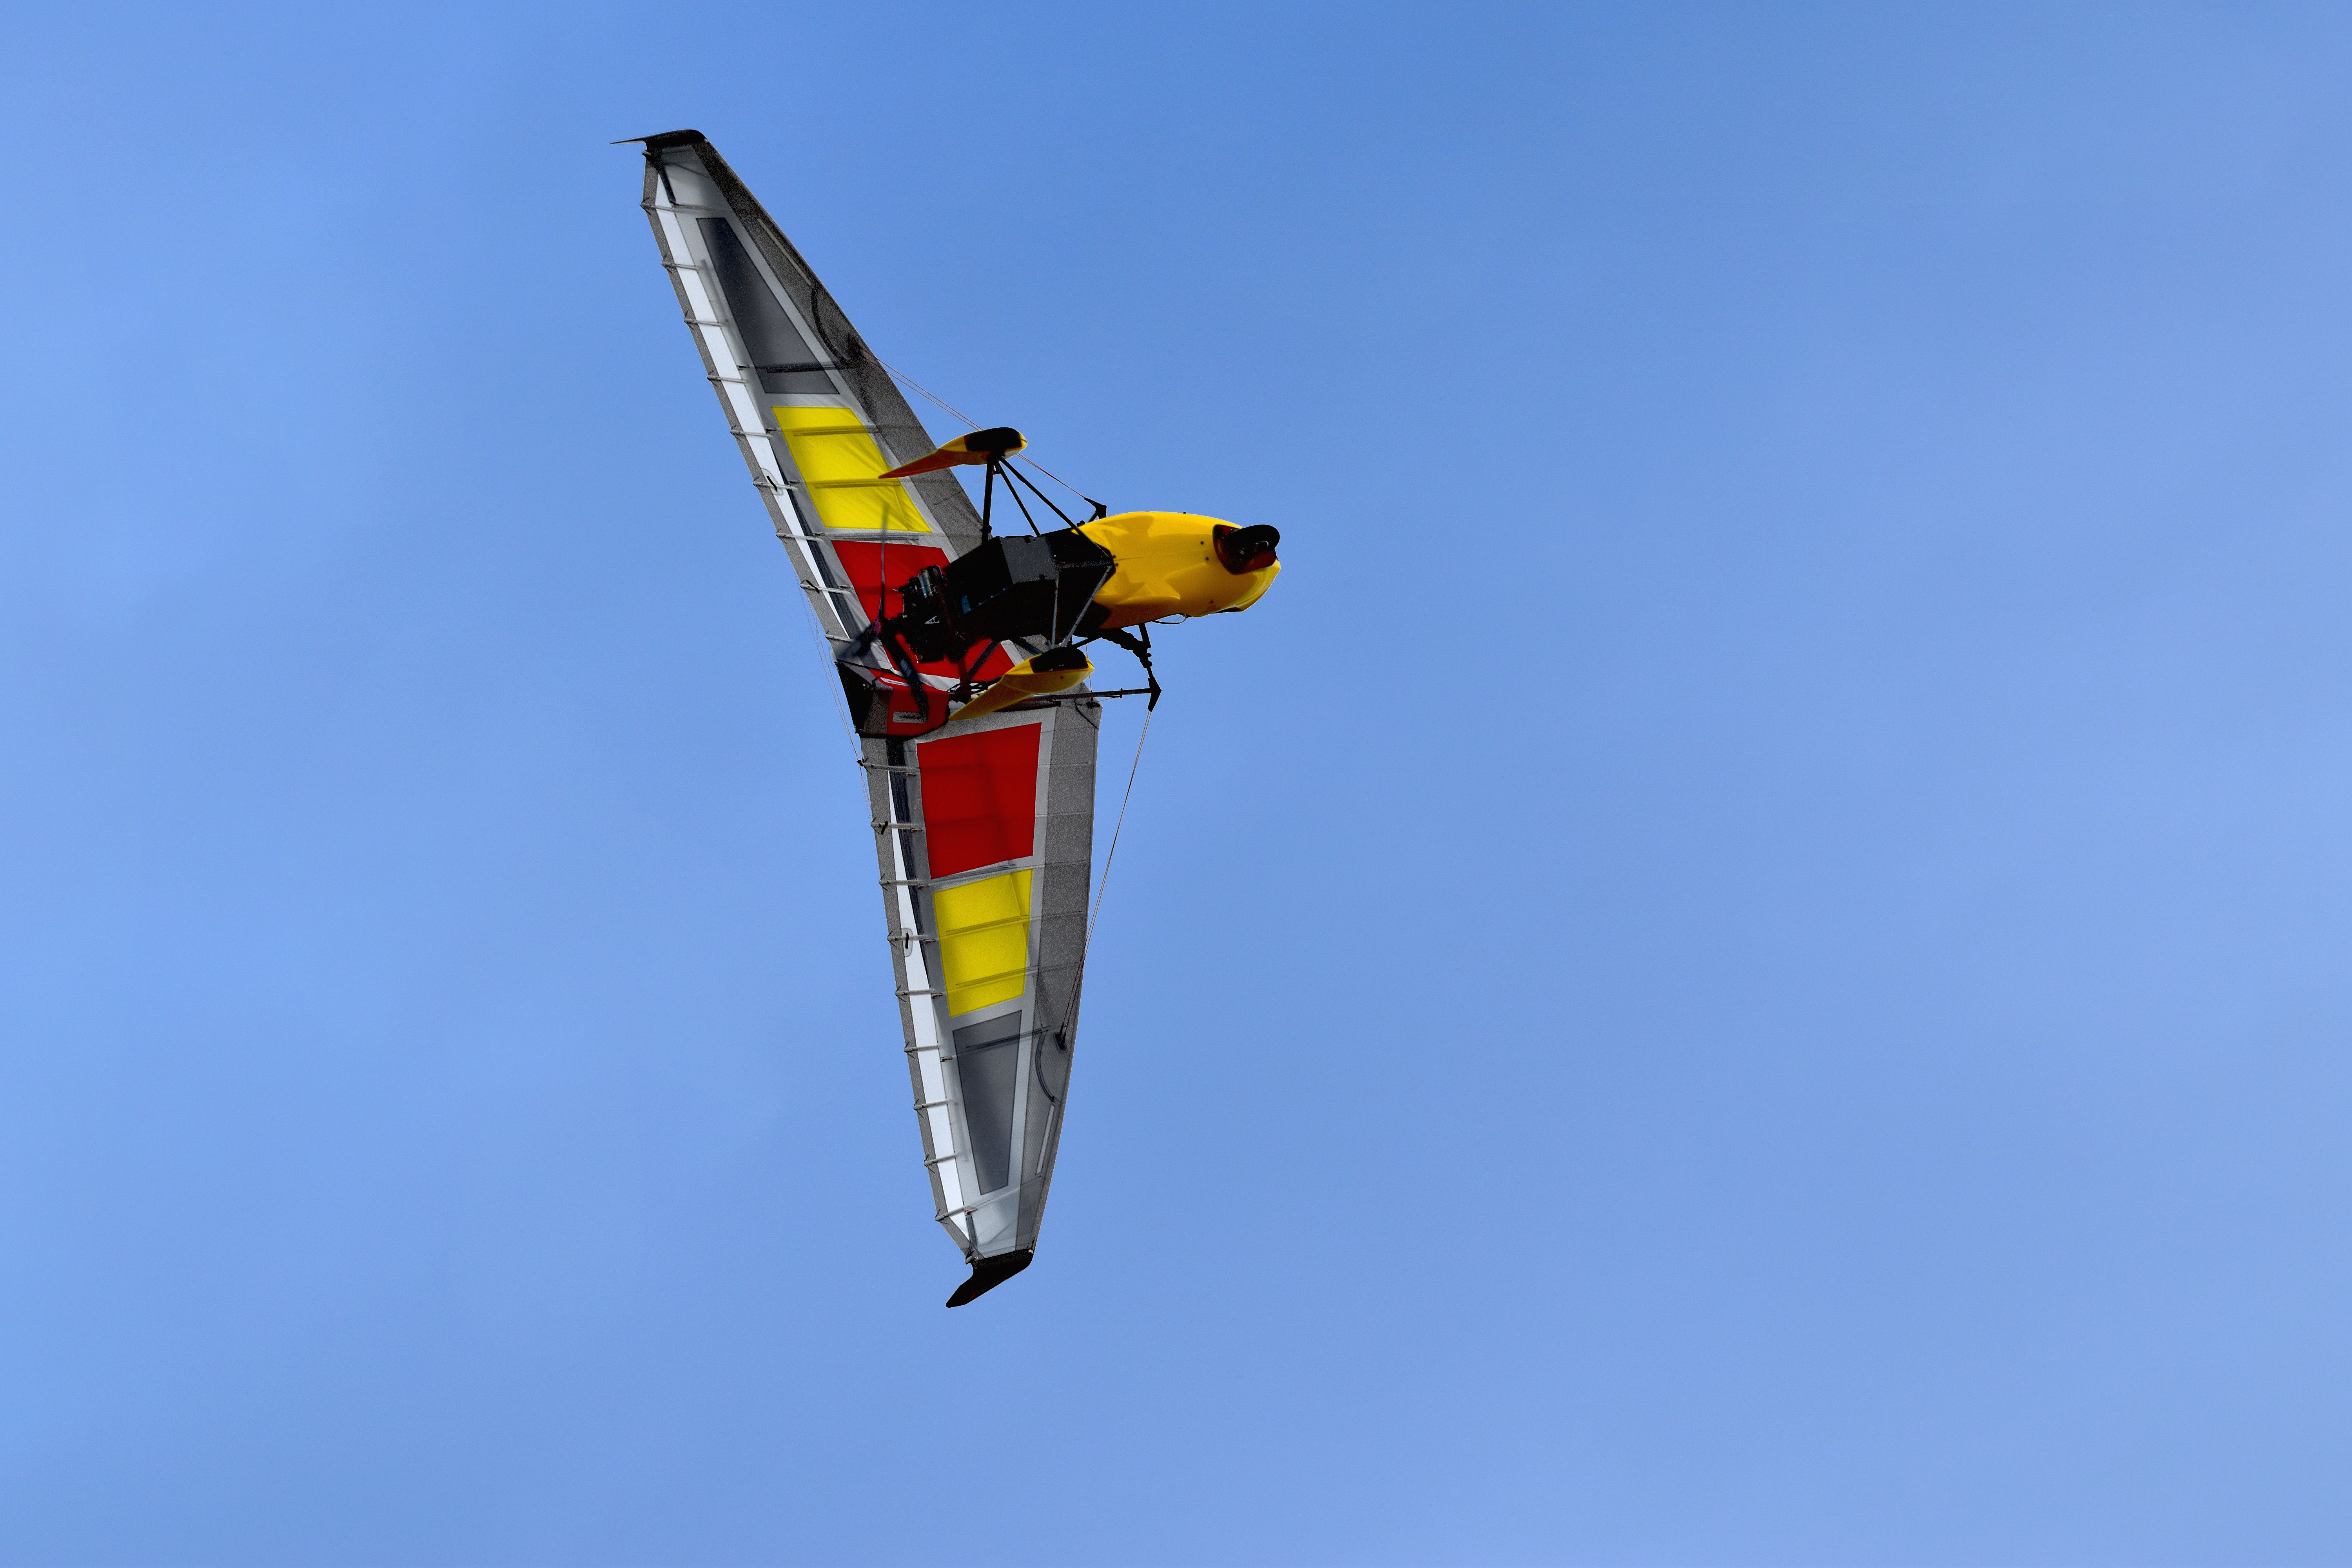 fly/principal-bionix2-skypper-evo-en-vol-in-fly-ulm-pendulaire-ultralight-trike-wings.jpg